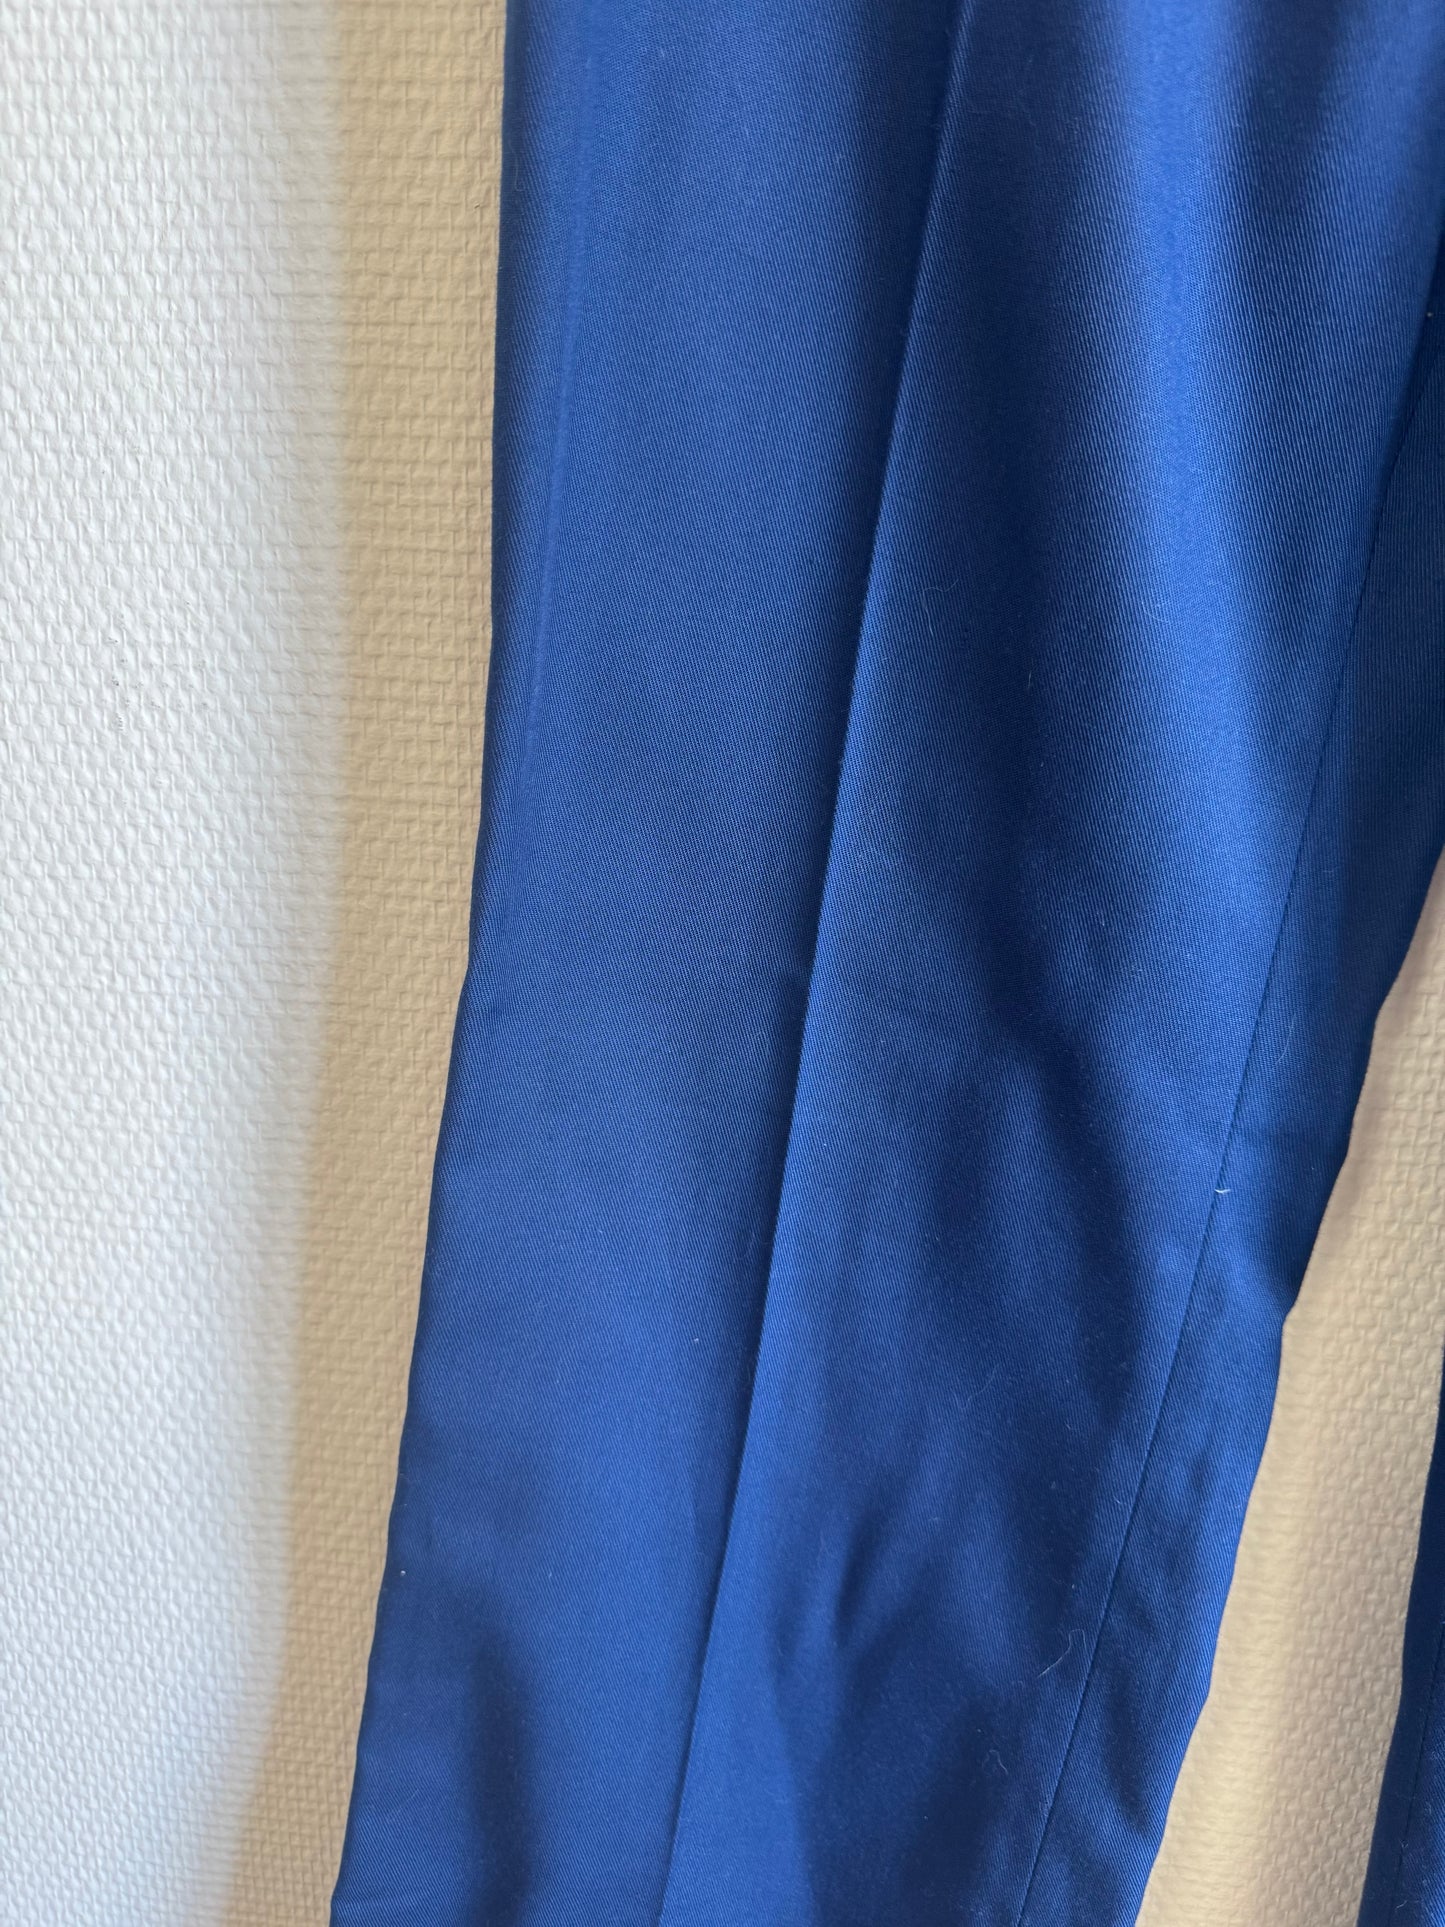 Pantalon bleu 70s